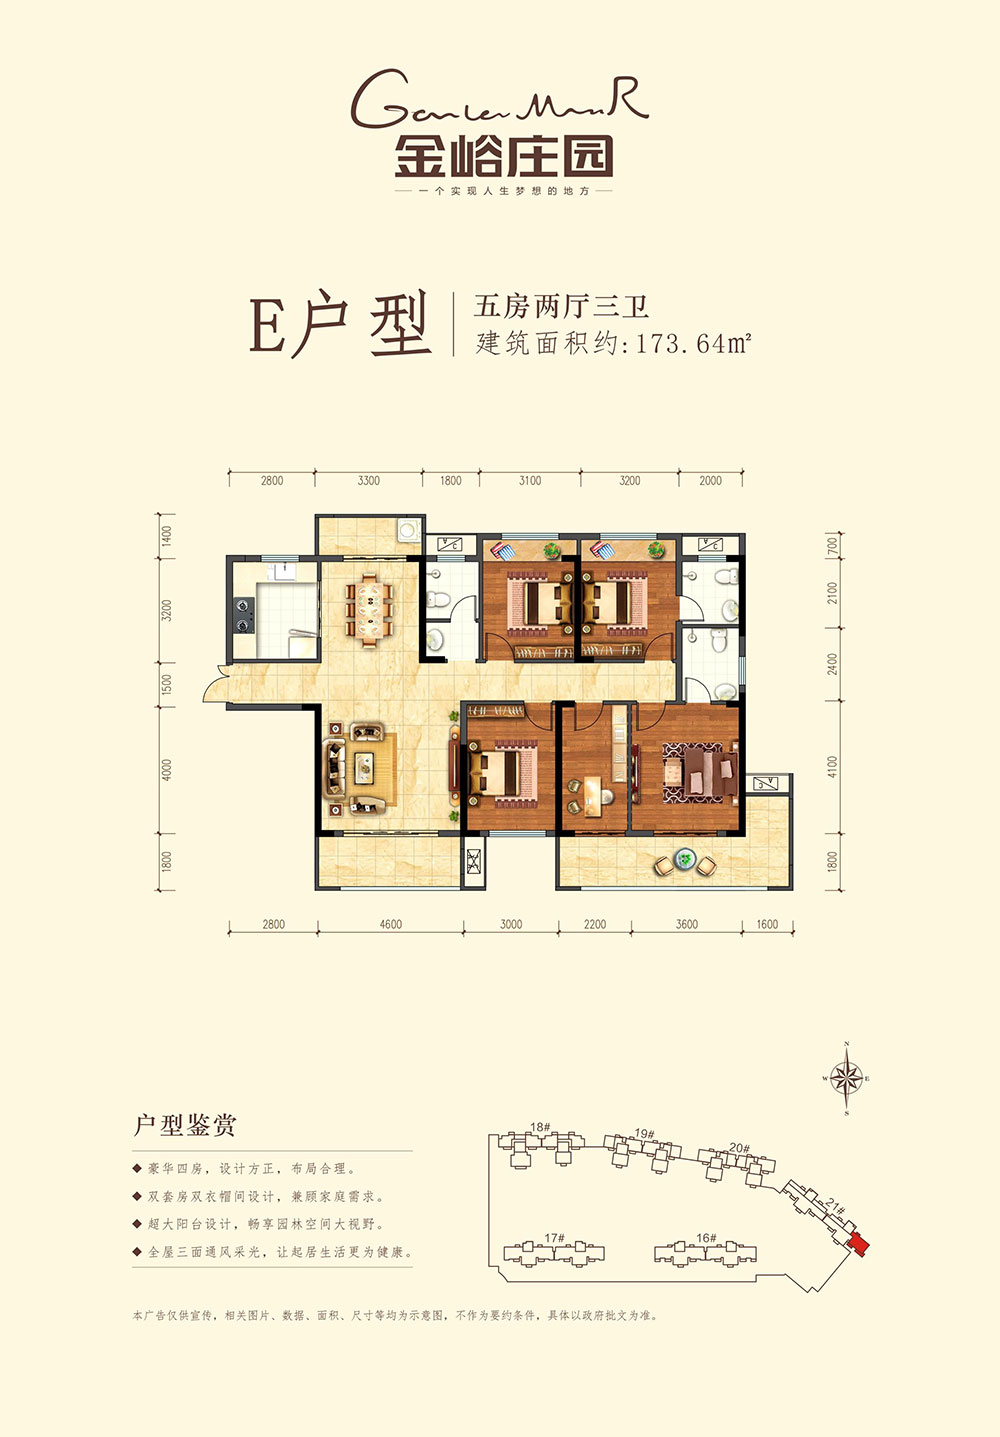 益阳-沅江市公园世家为您提供E户型图片详情鉴赏